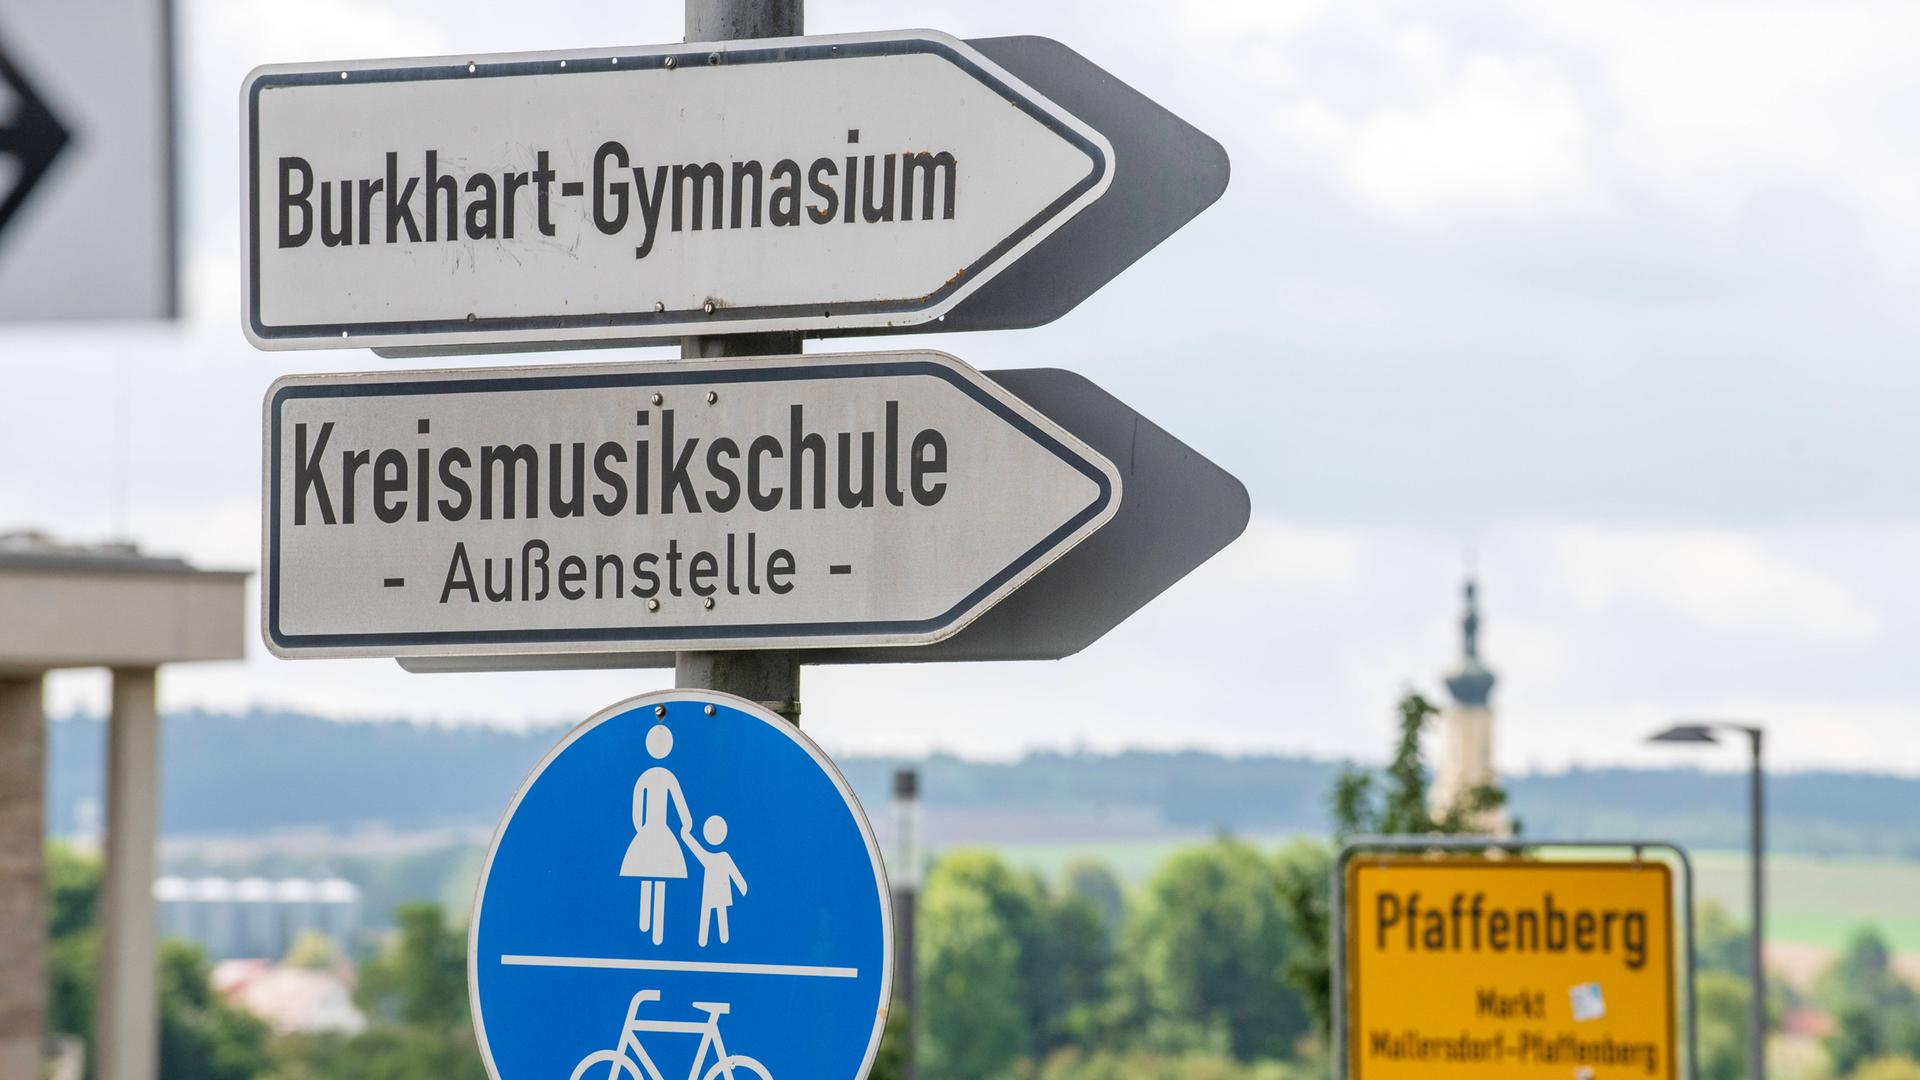 Zu sehen ist ein Schild das in Richtung des "Burkhart-Gymnasiums" in Mallersdorf-Pfaffenberg zeigt. Das ist die ehemalige Schule von Hubert und Helmut Aiwanger.